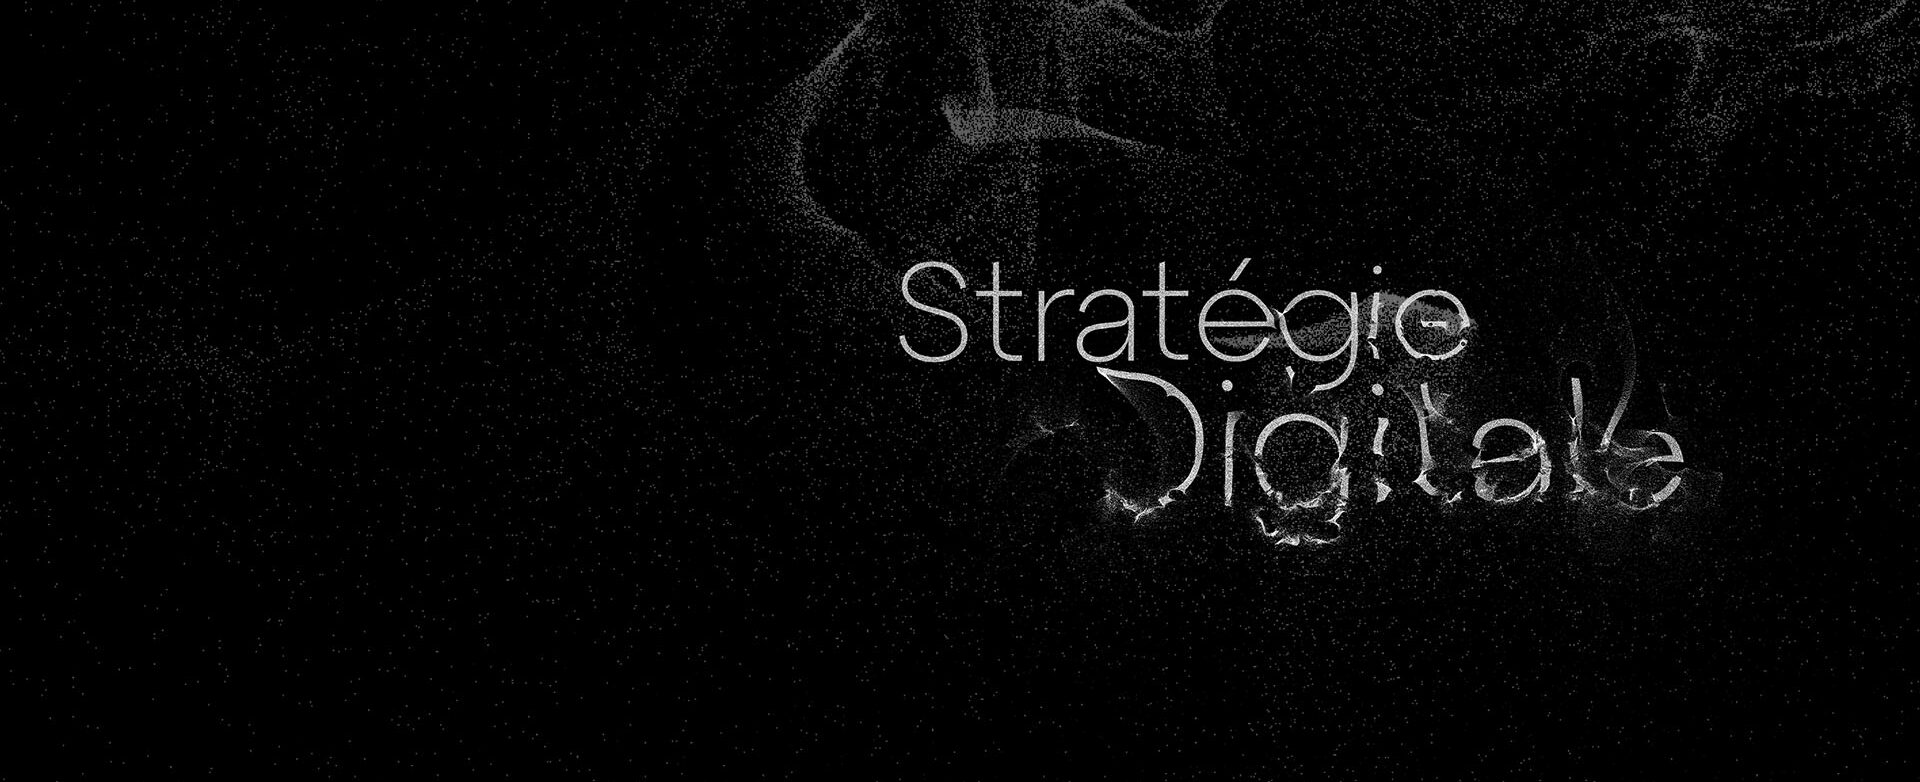 Image stylisée avec un effet particule du texte "stratégie digitale"